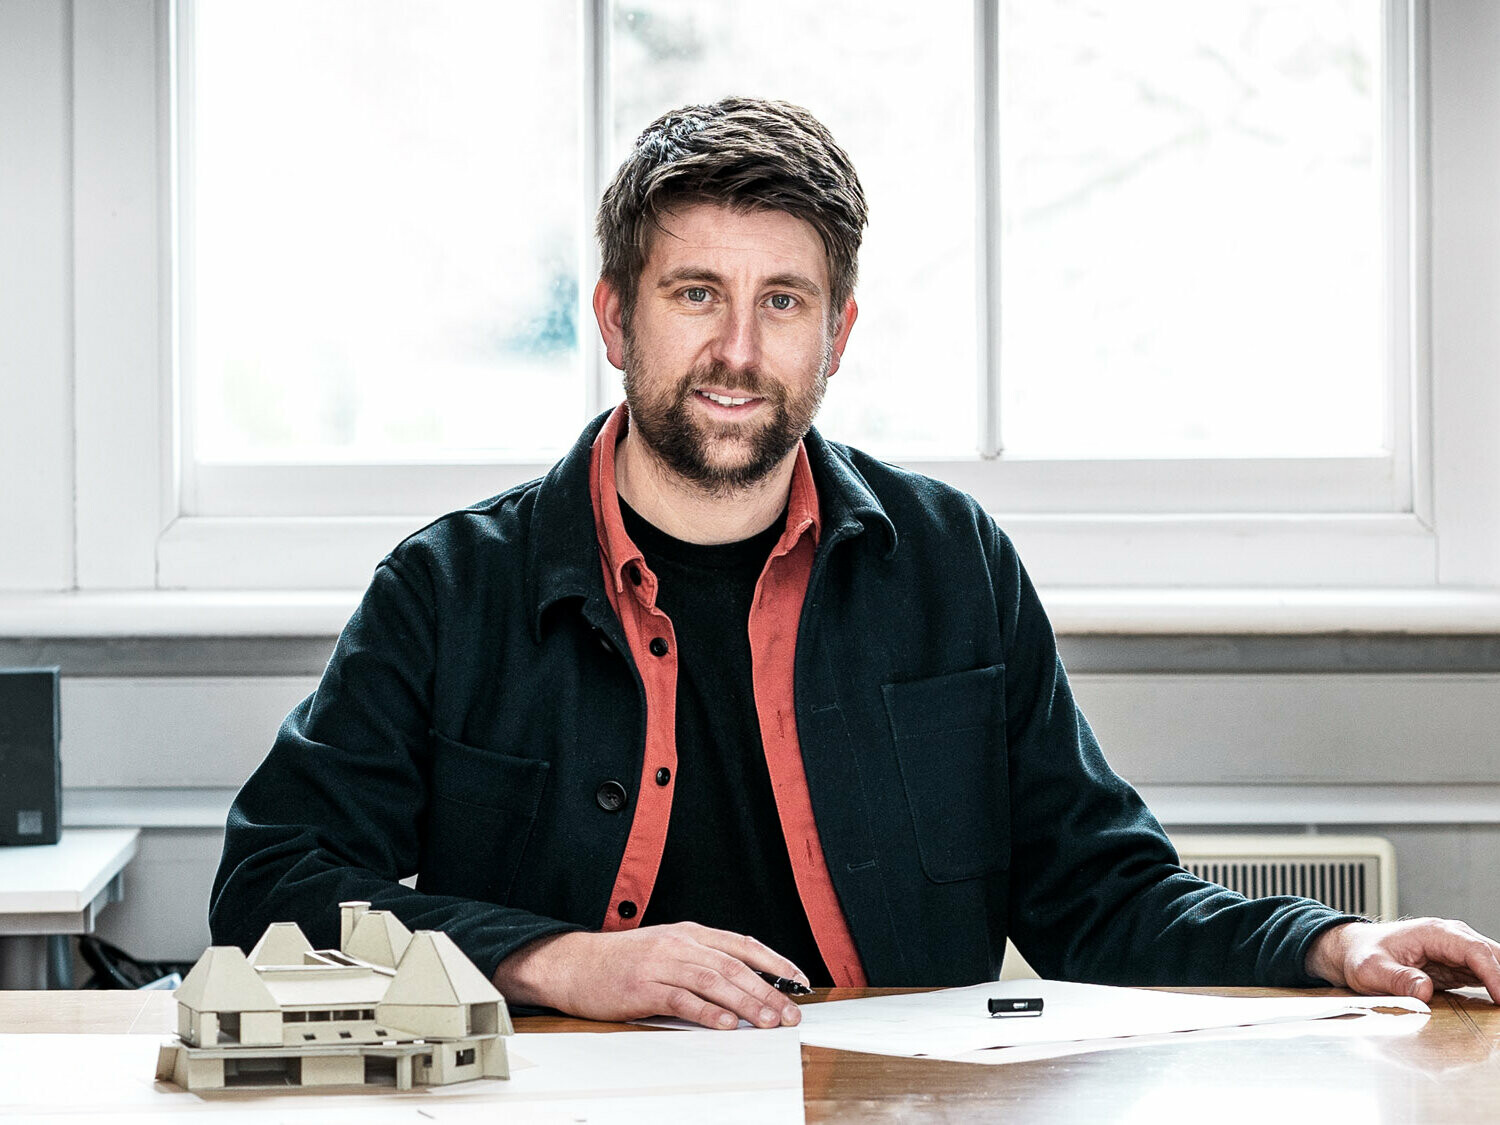 Portrét hlavního architekta Tima Howella z britské firmy Mitchell Evans Architects, sedícího u stolu před modelem objektu